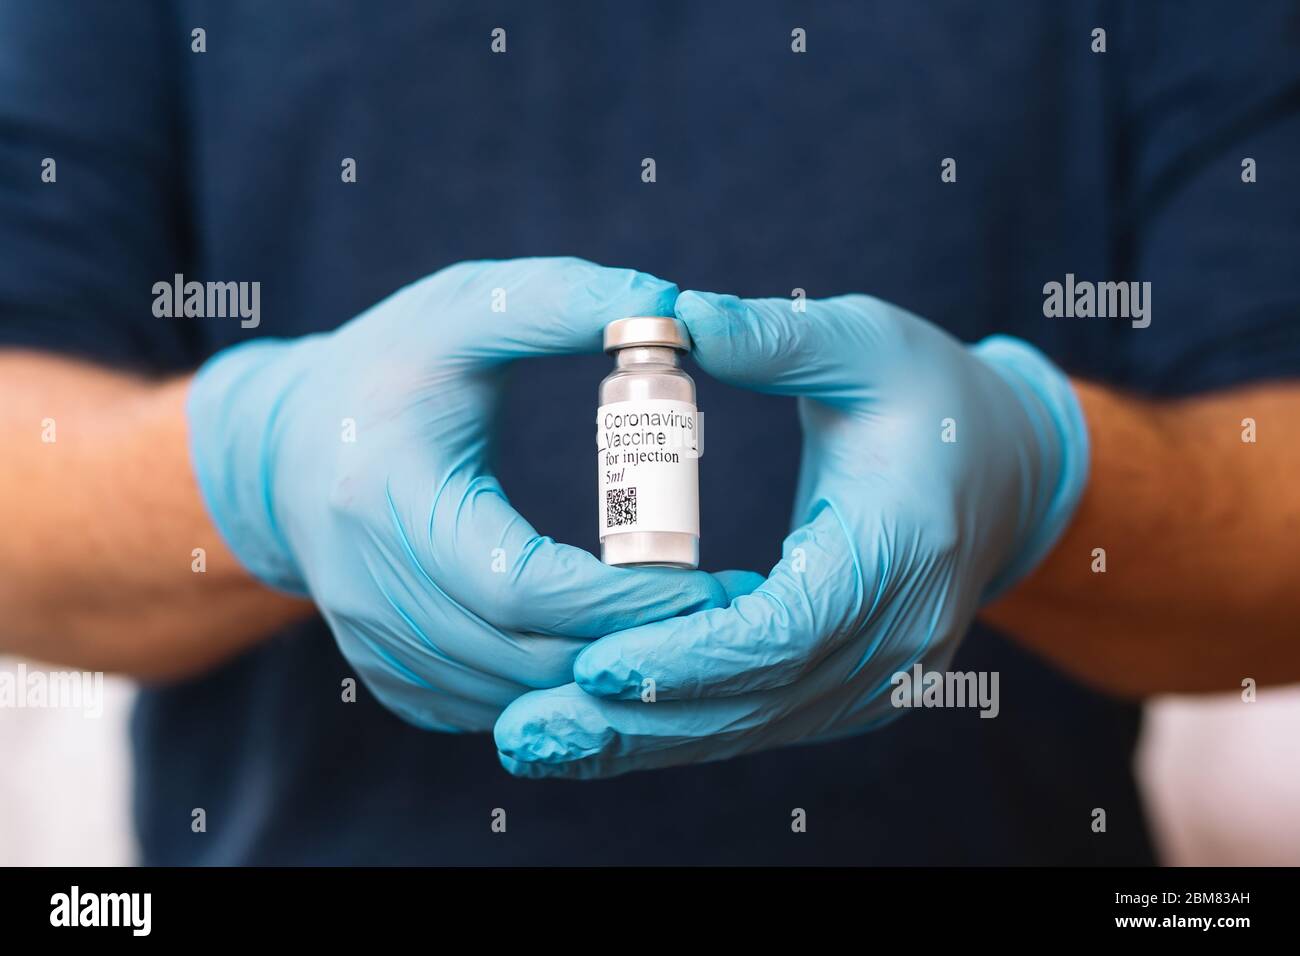 Coronavirus-Impfstoff. Arzt mit Impfstoff. Hände, die eine Ampulle gegen Covid-19 halten. Stockfoto